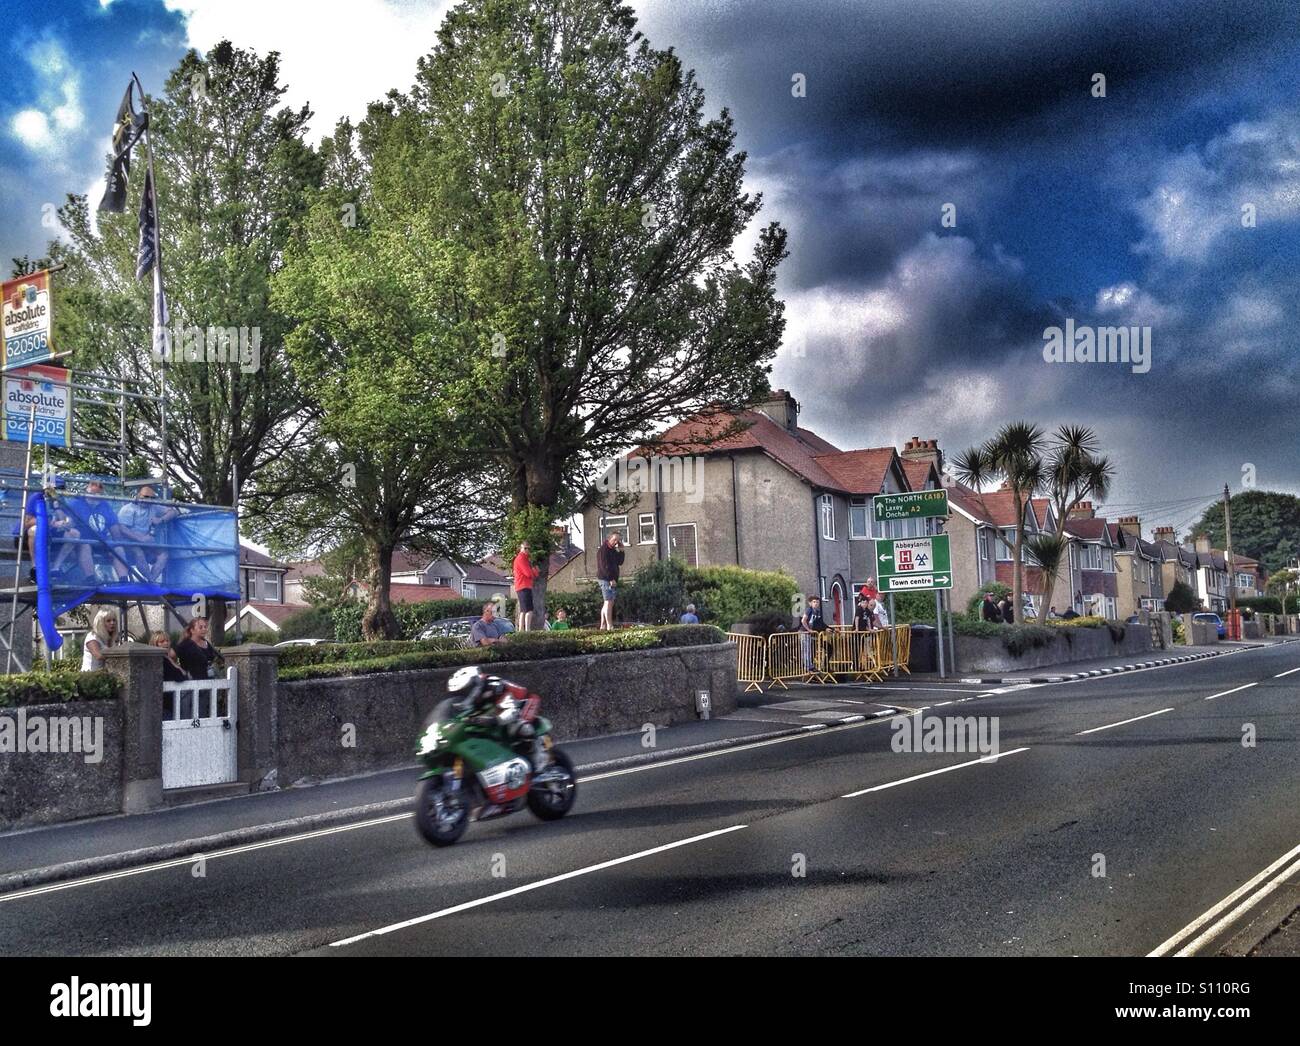 TT race, Isle of Man Stock Photo